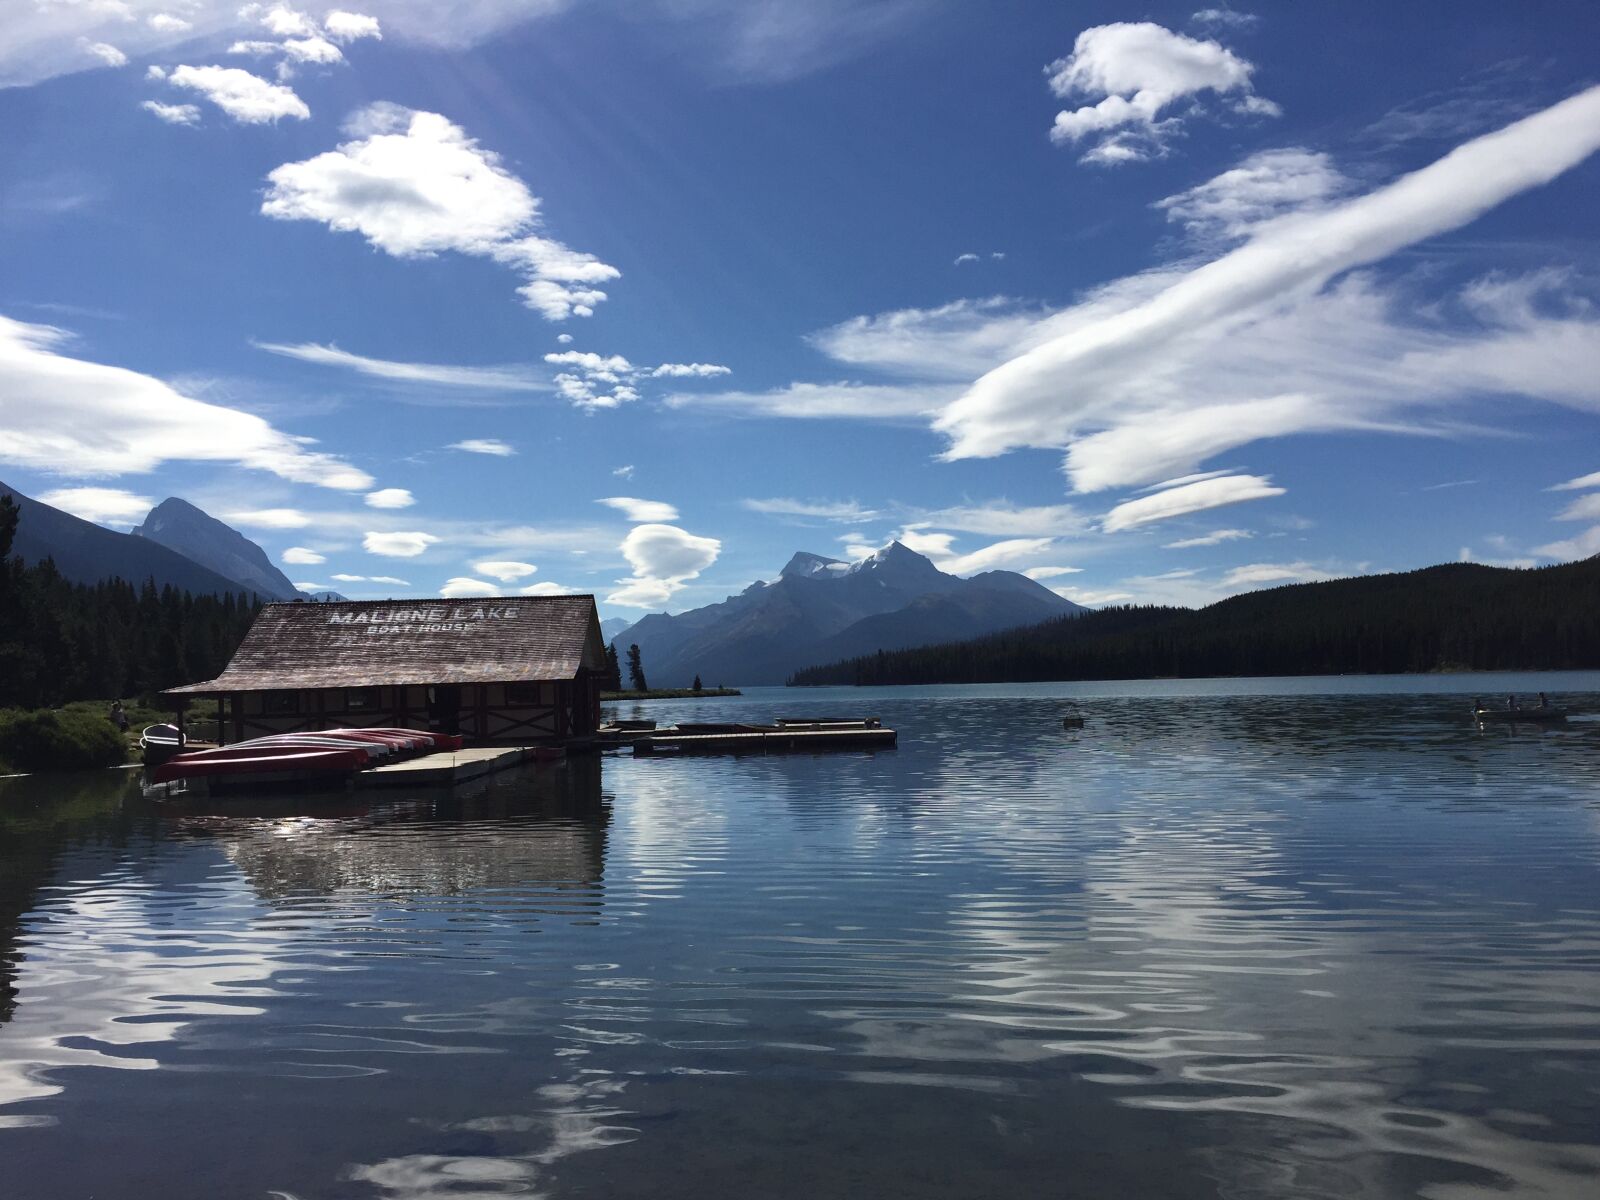 Apple iPhone 6 sample photo. Maligne lake, canada, lake photography